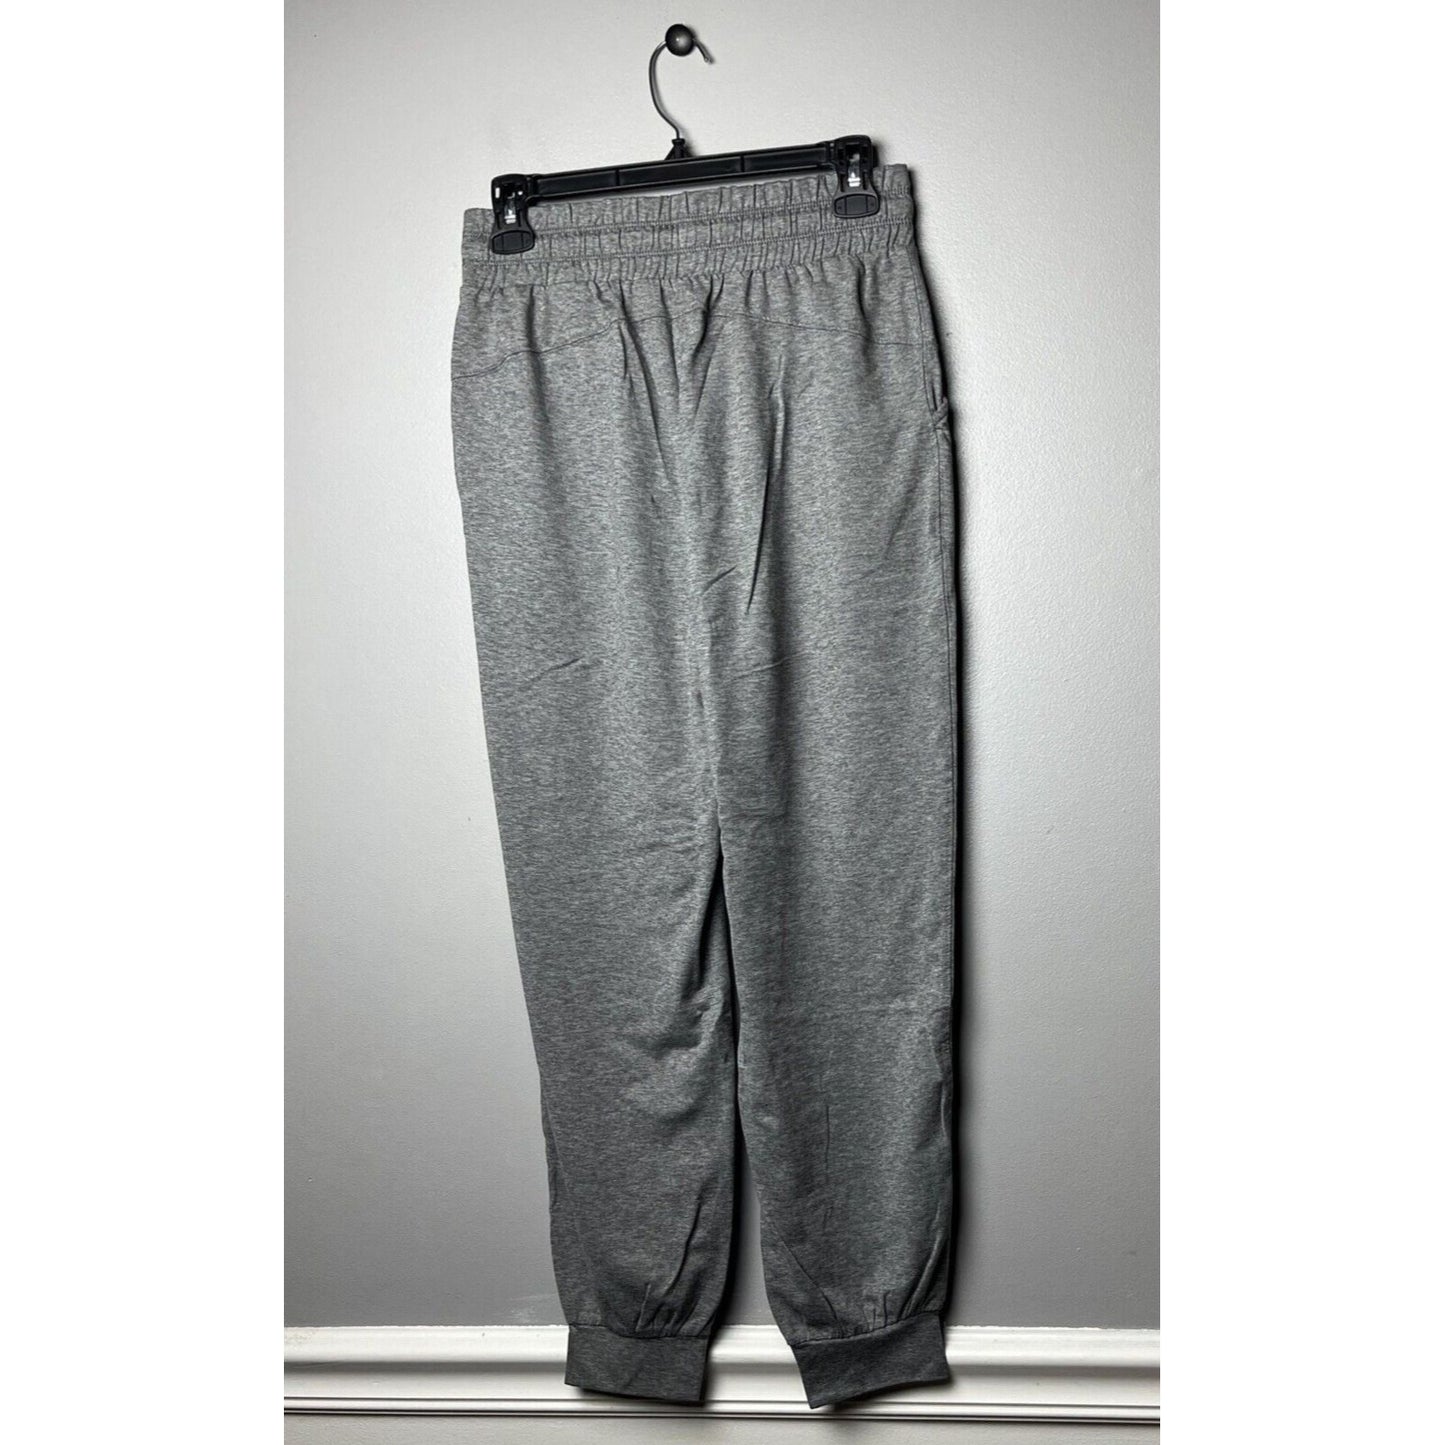 zuda Women's Pants Sz XXS Tall Z-Cool Cropped Joggers Gray A396031